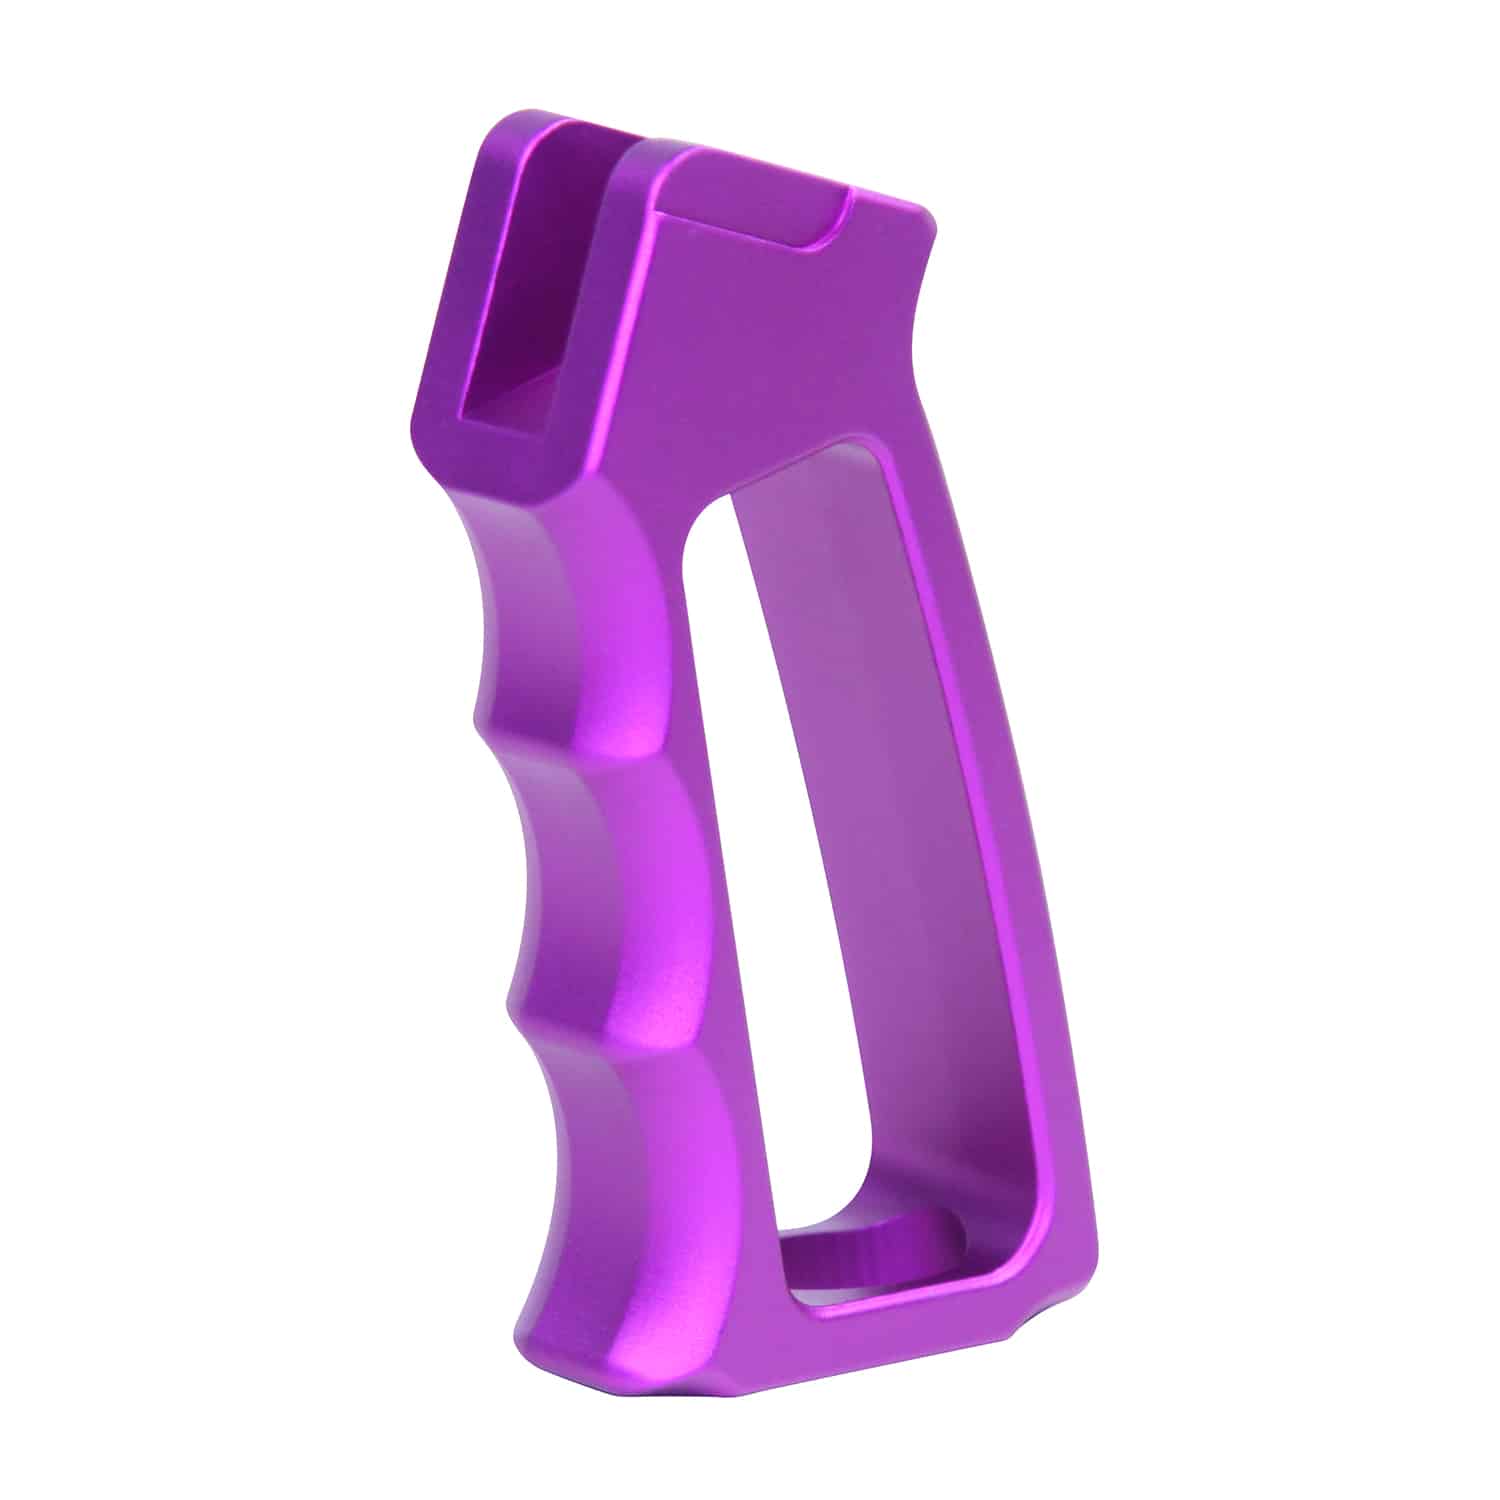 Skeletonized Aluminum Pistol Grip Second Gen in Anodized Purple